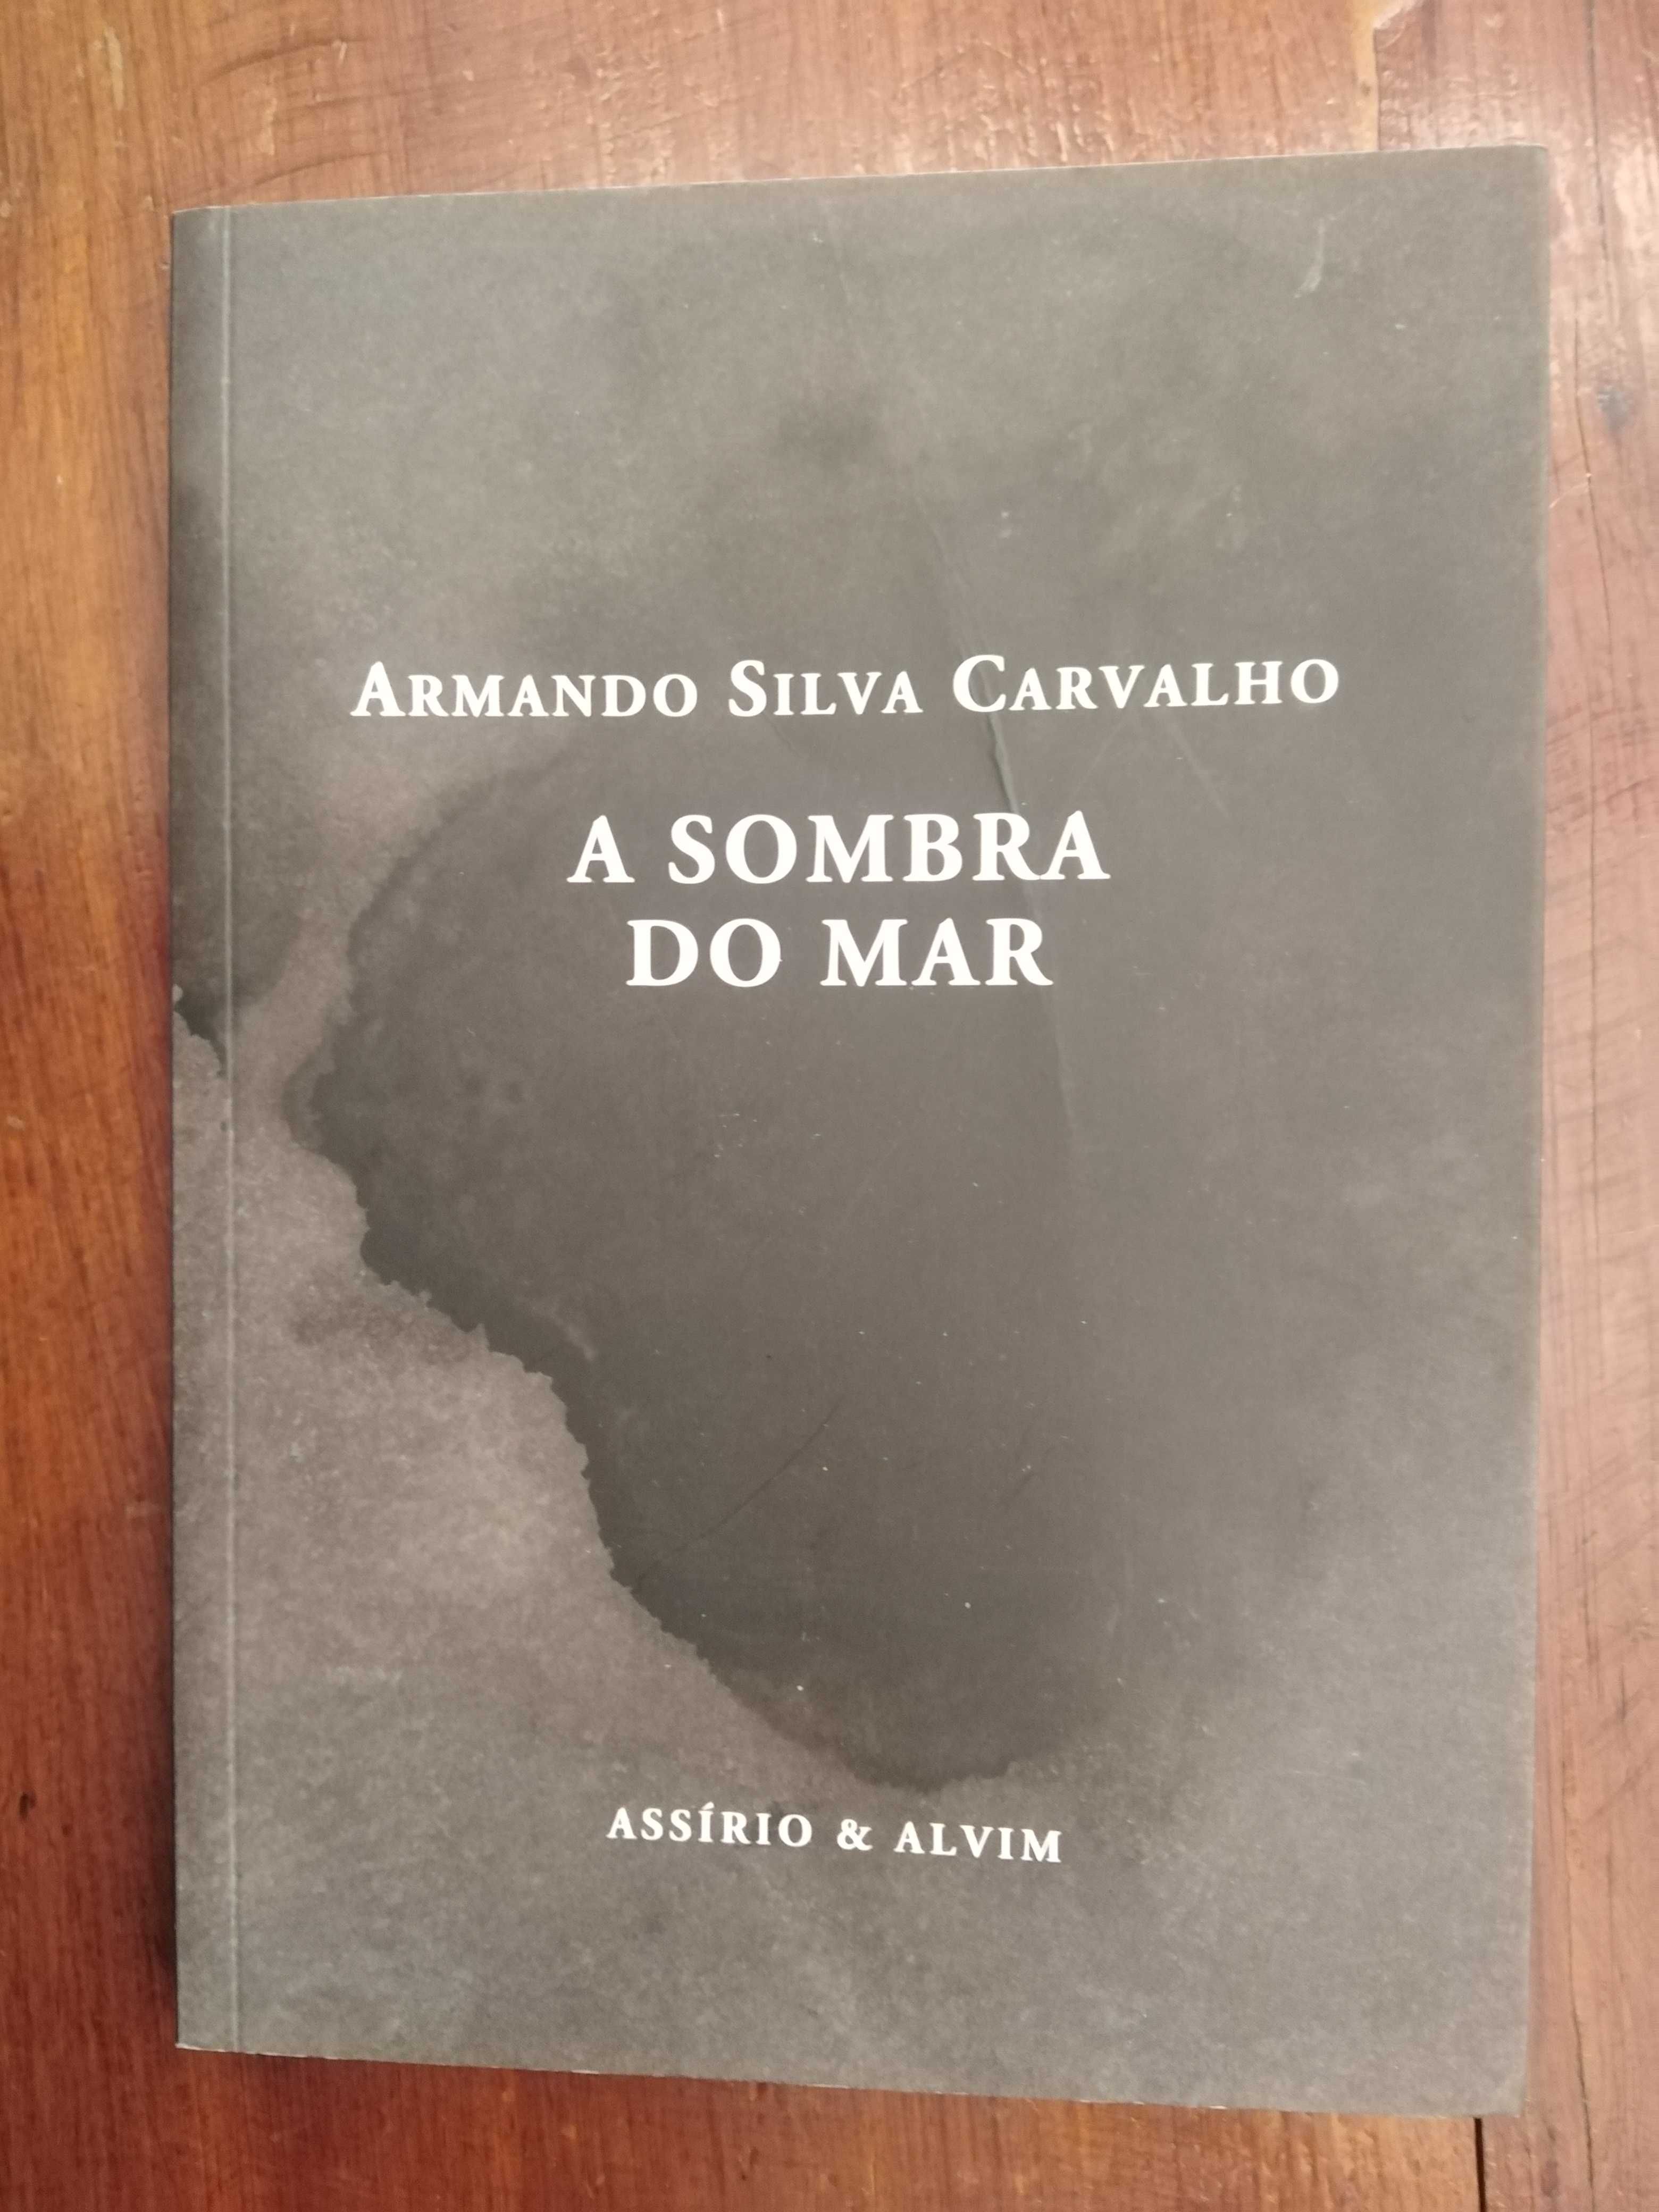 Armando Silva Carvalho - A sombra do mar